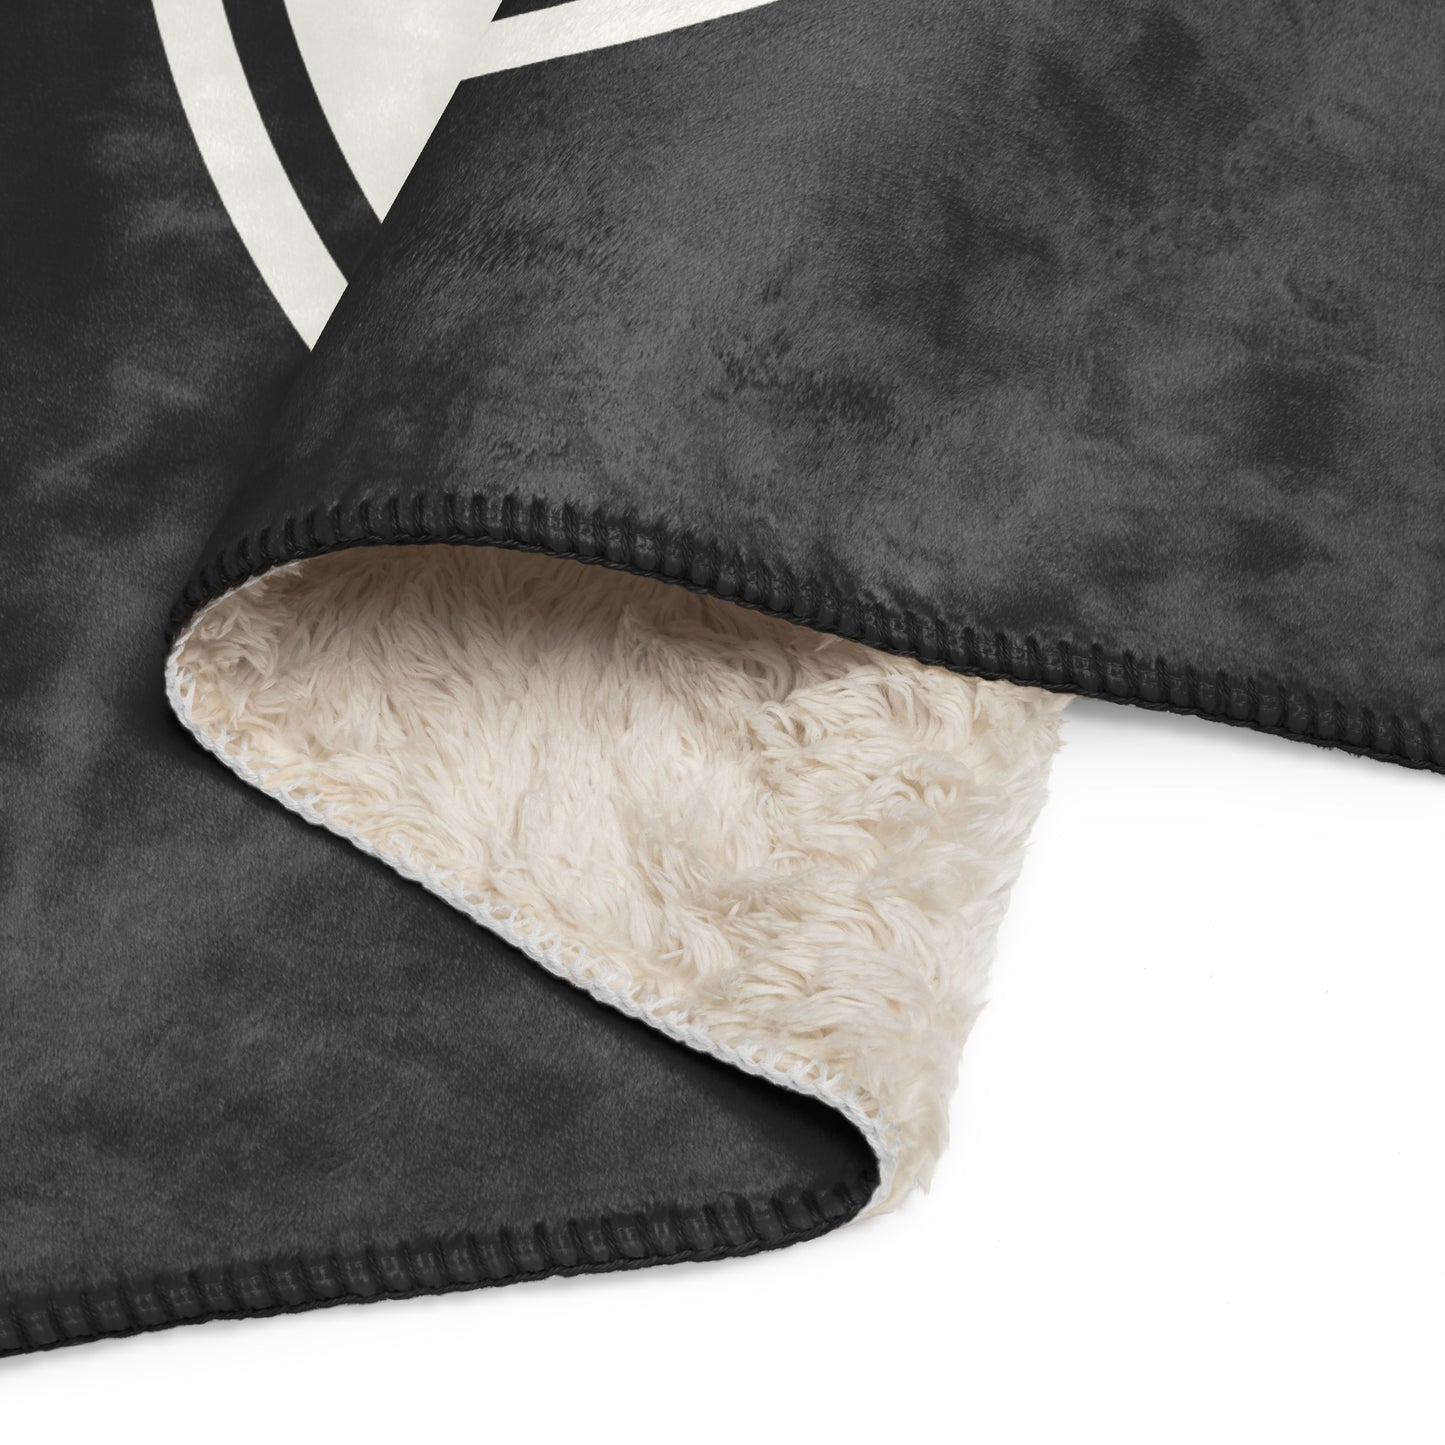 Unique Travel Gift Sherpa Blanket - White Oval • ZRH Zurich • YHM Designs - Image 08